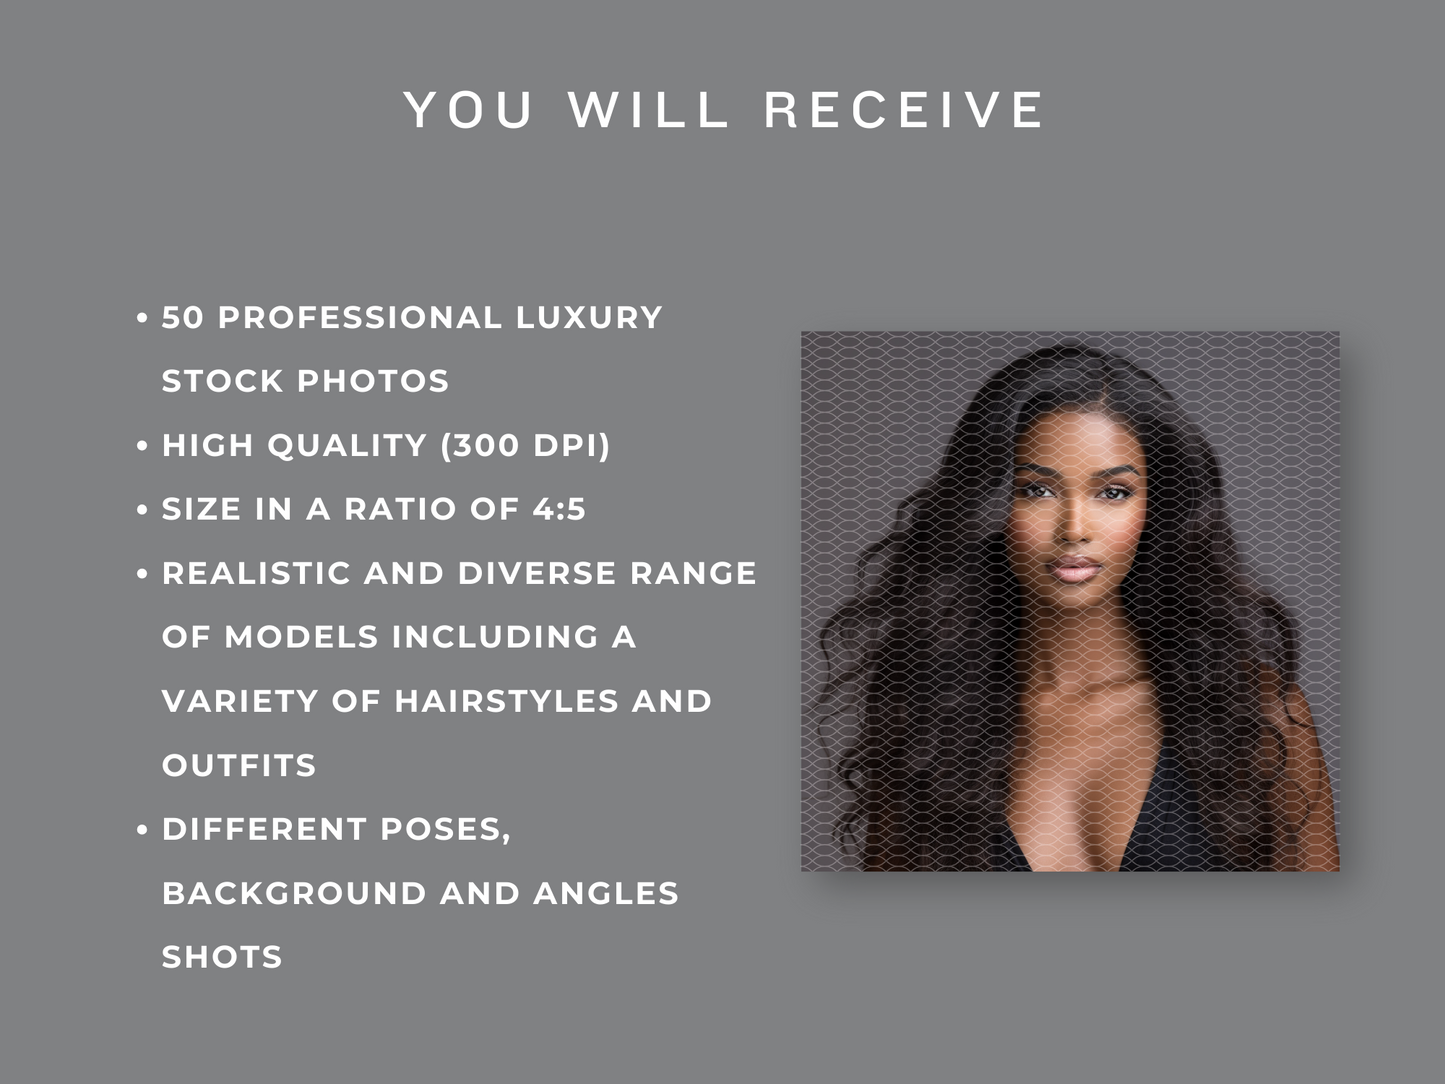 50 Hair Bundle Stock Photos